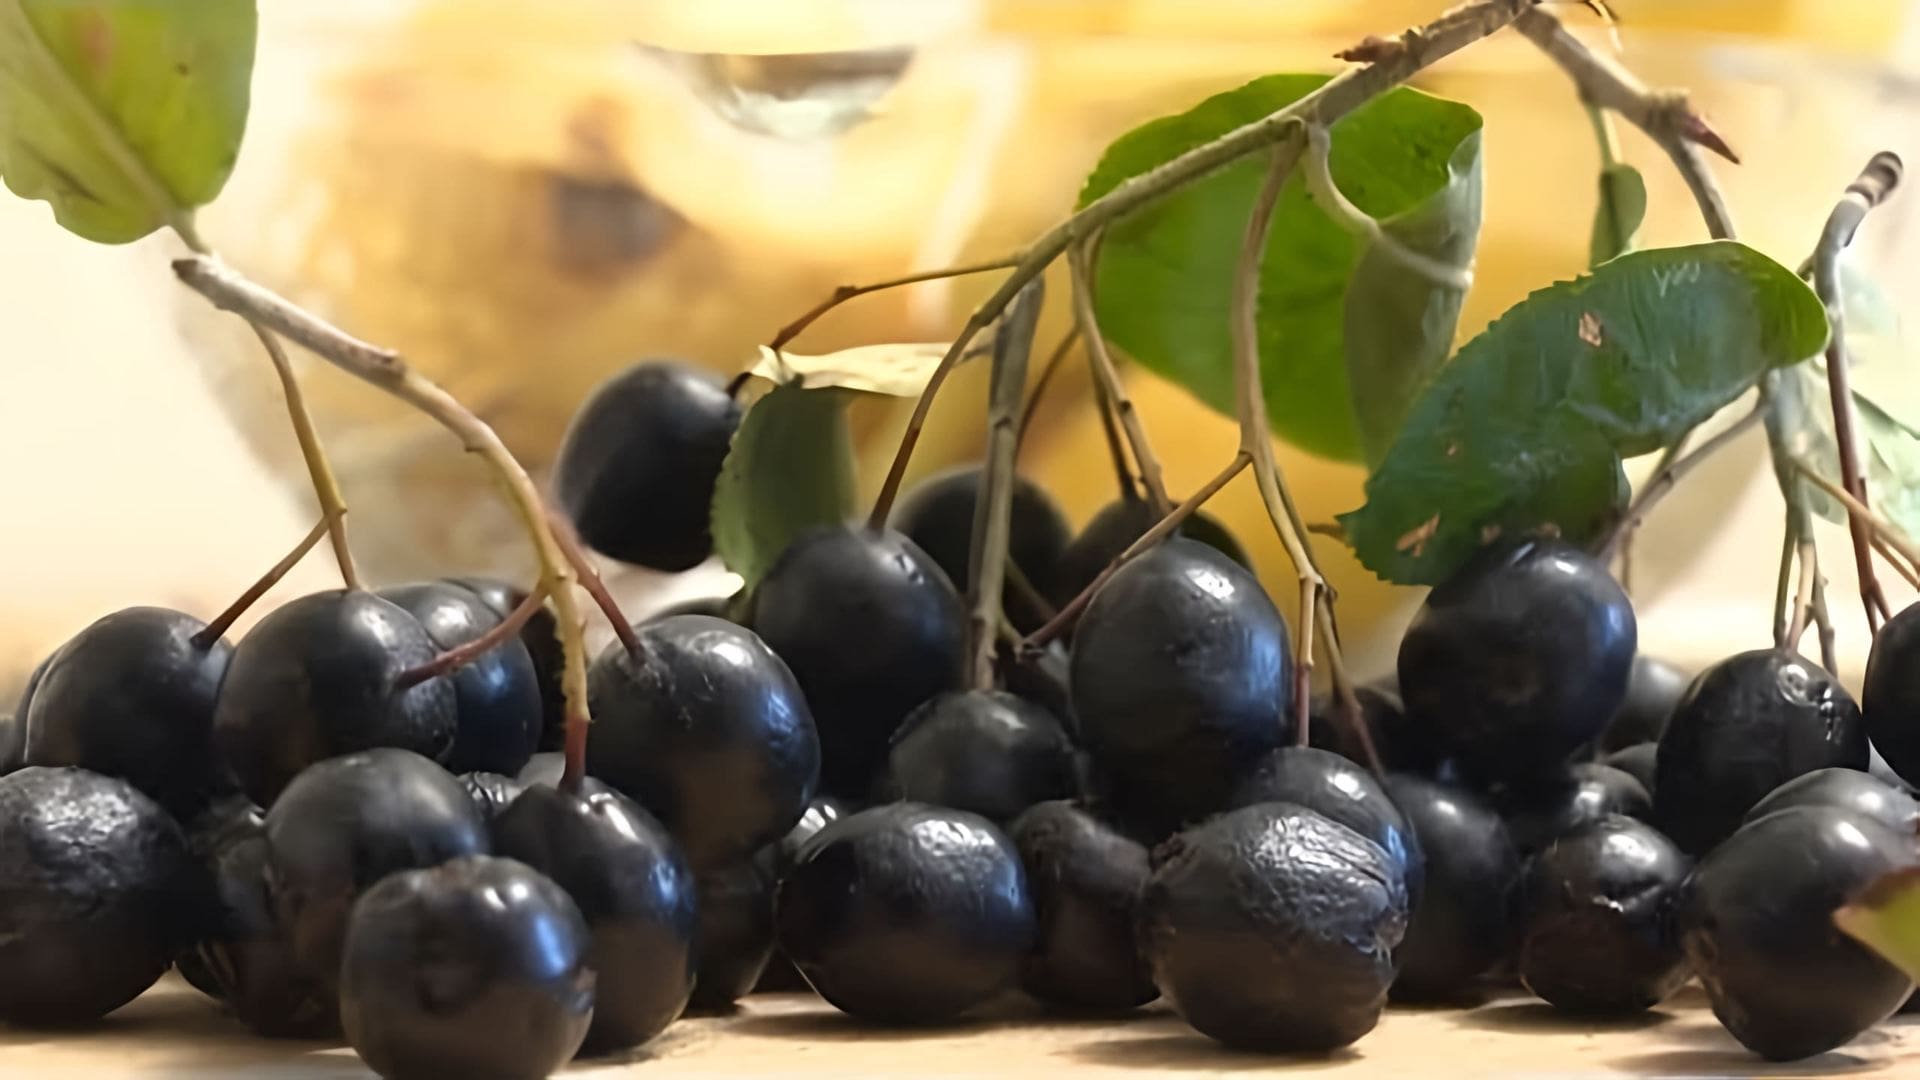 Черноплодная рябина, также известная как арония, является полезной ягодой, богатой витаминами и питательными веществами